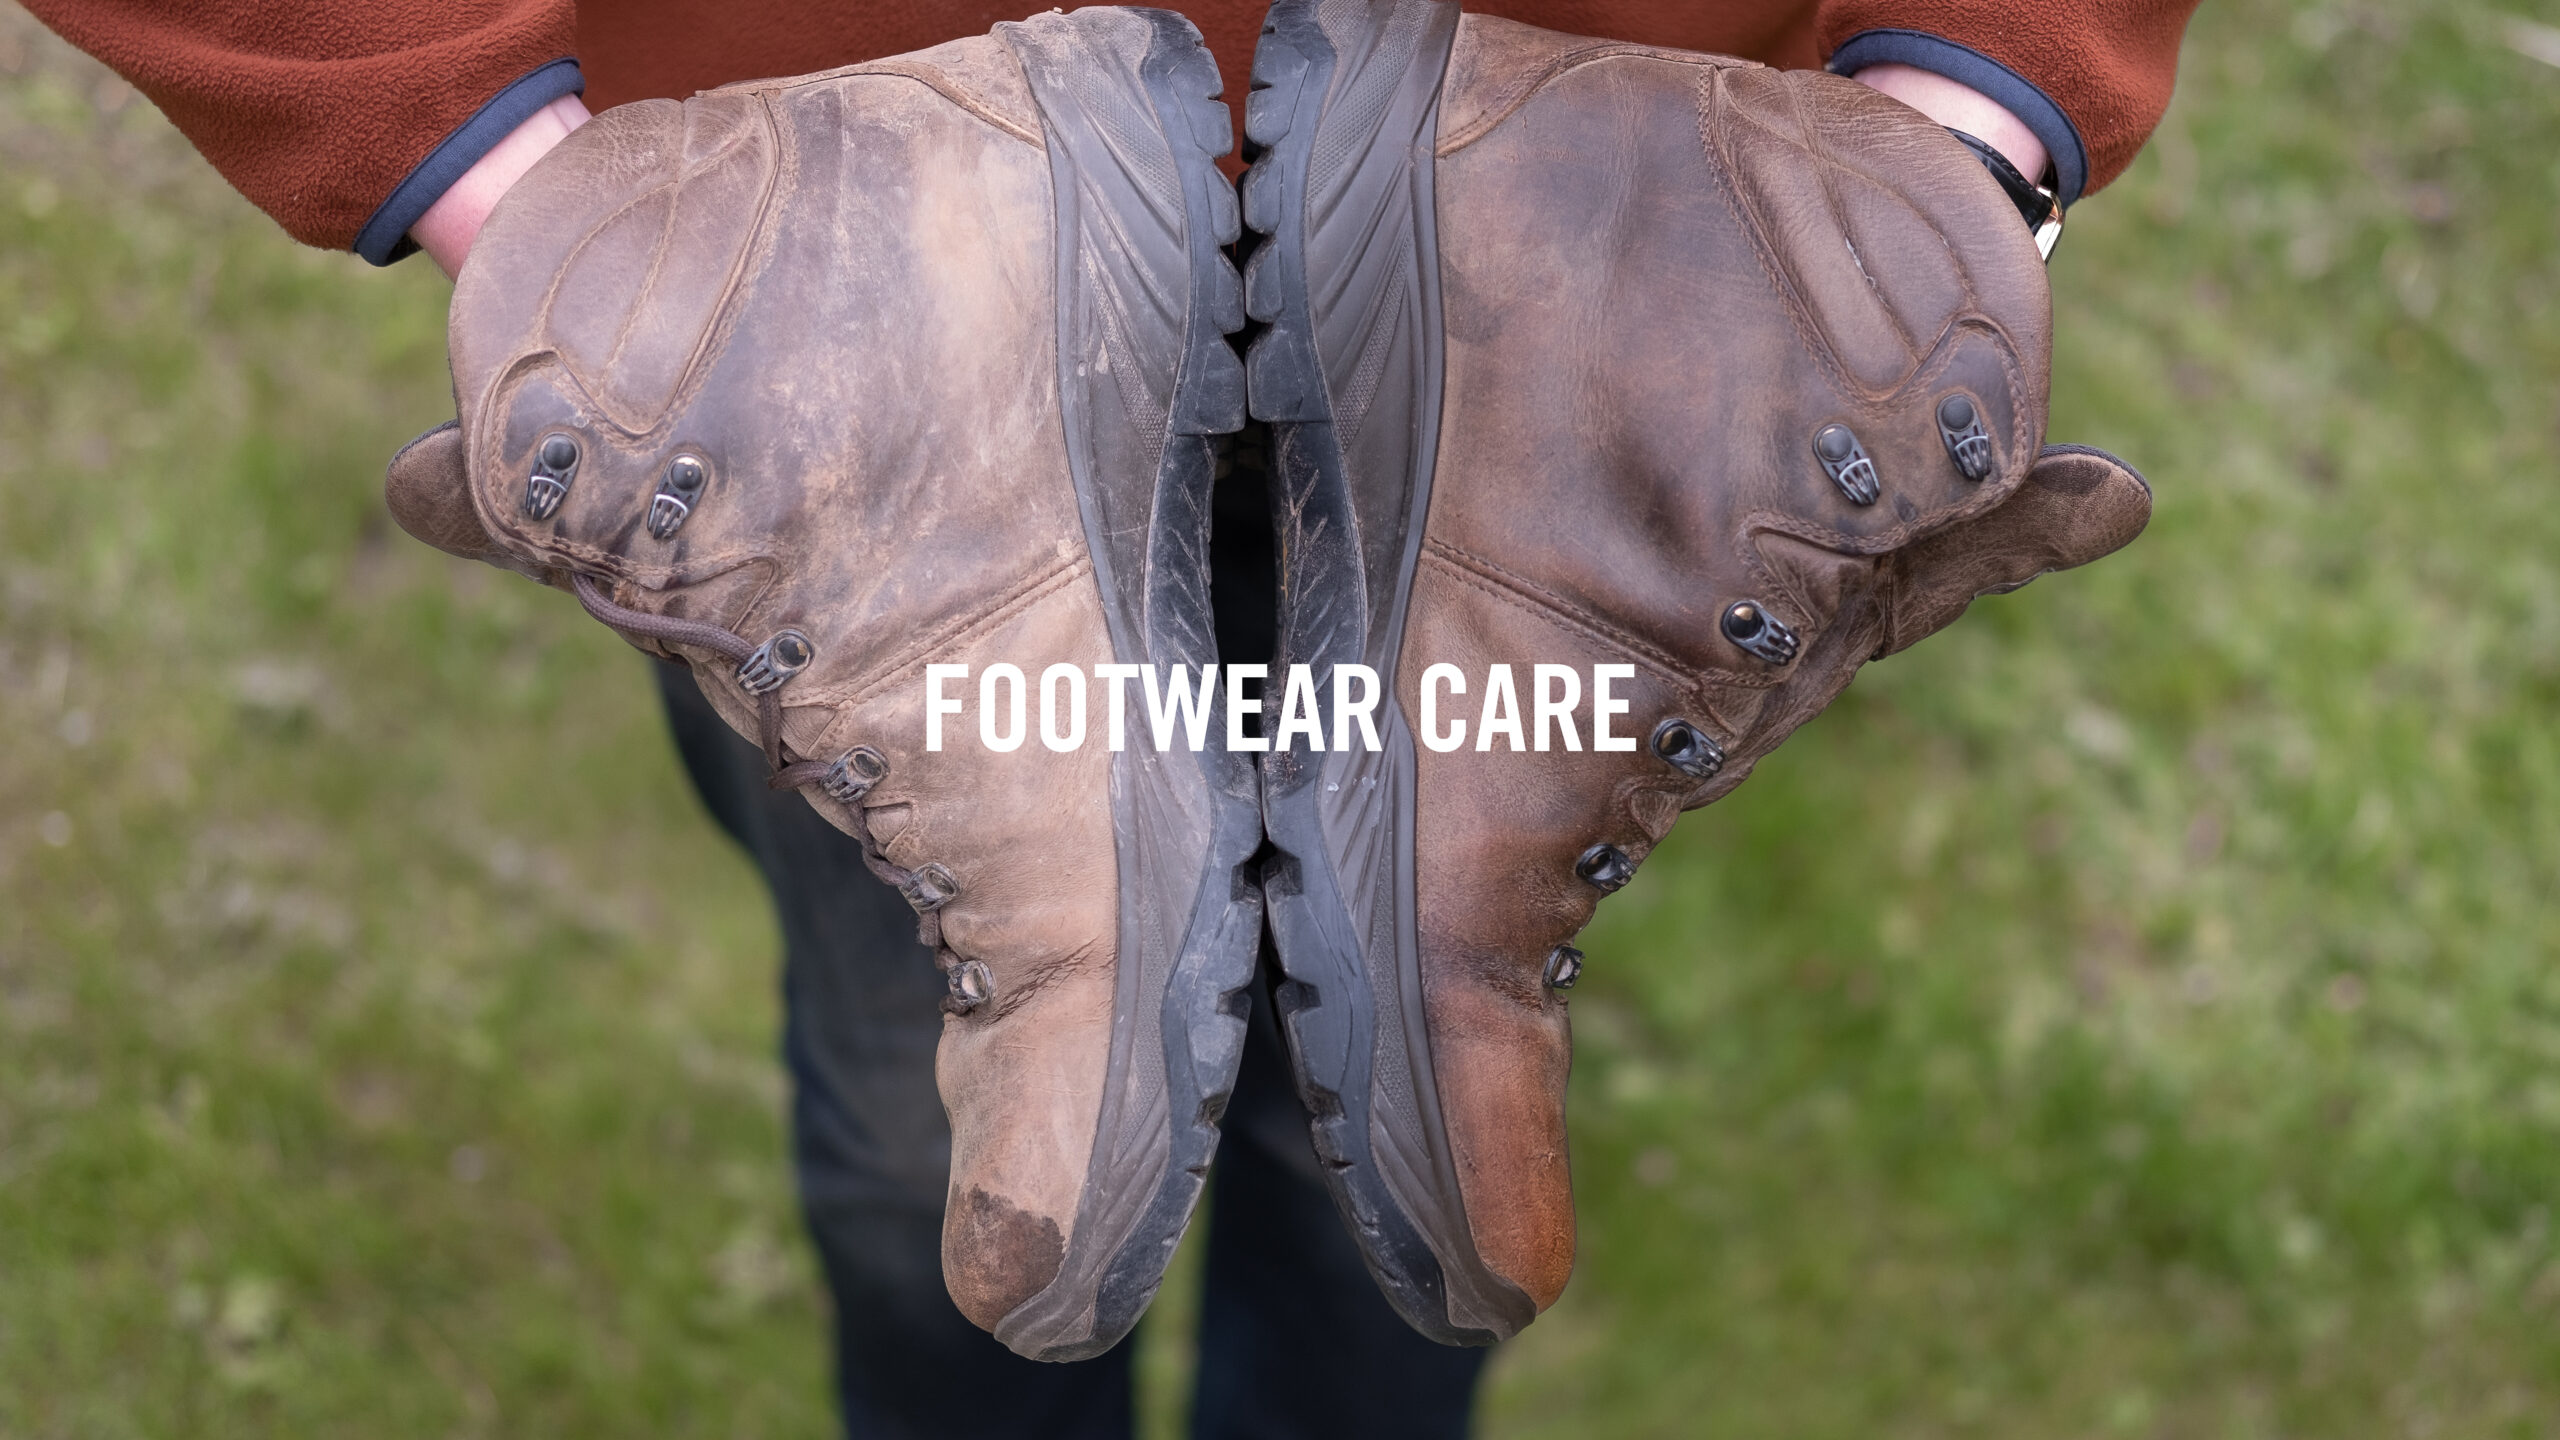 Outdoor footwear care: Footwear SOS